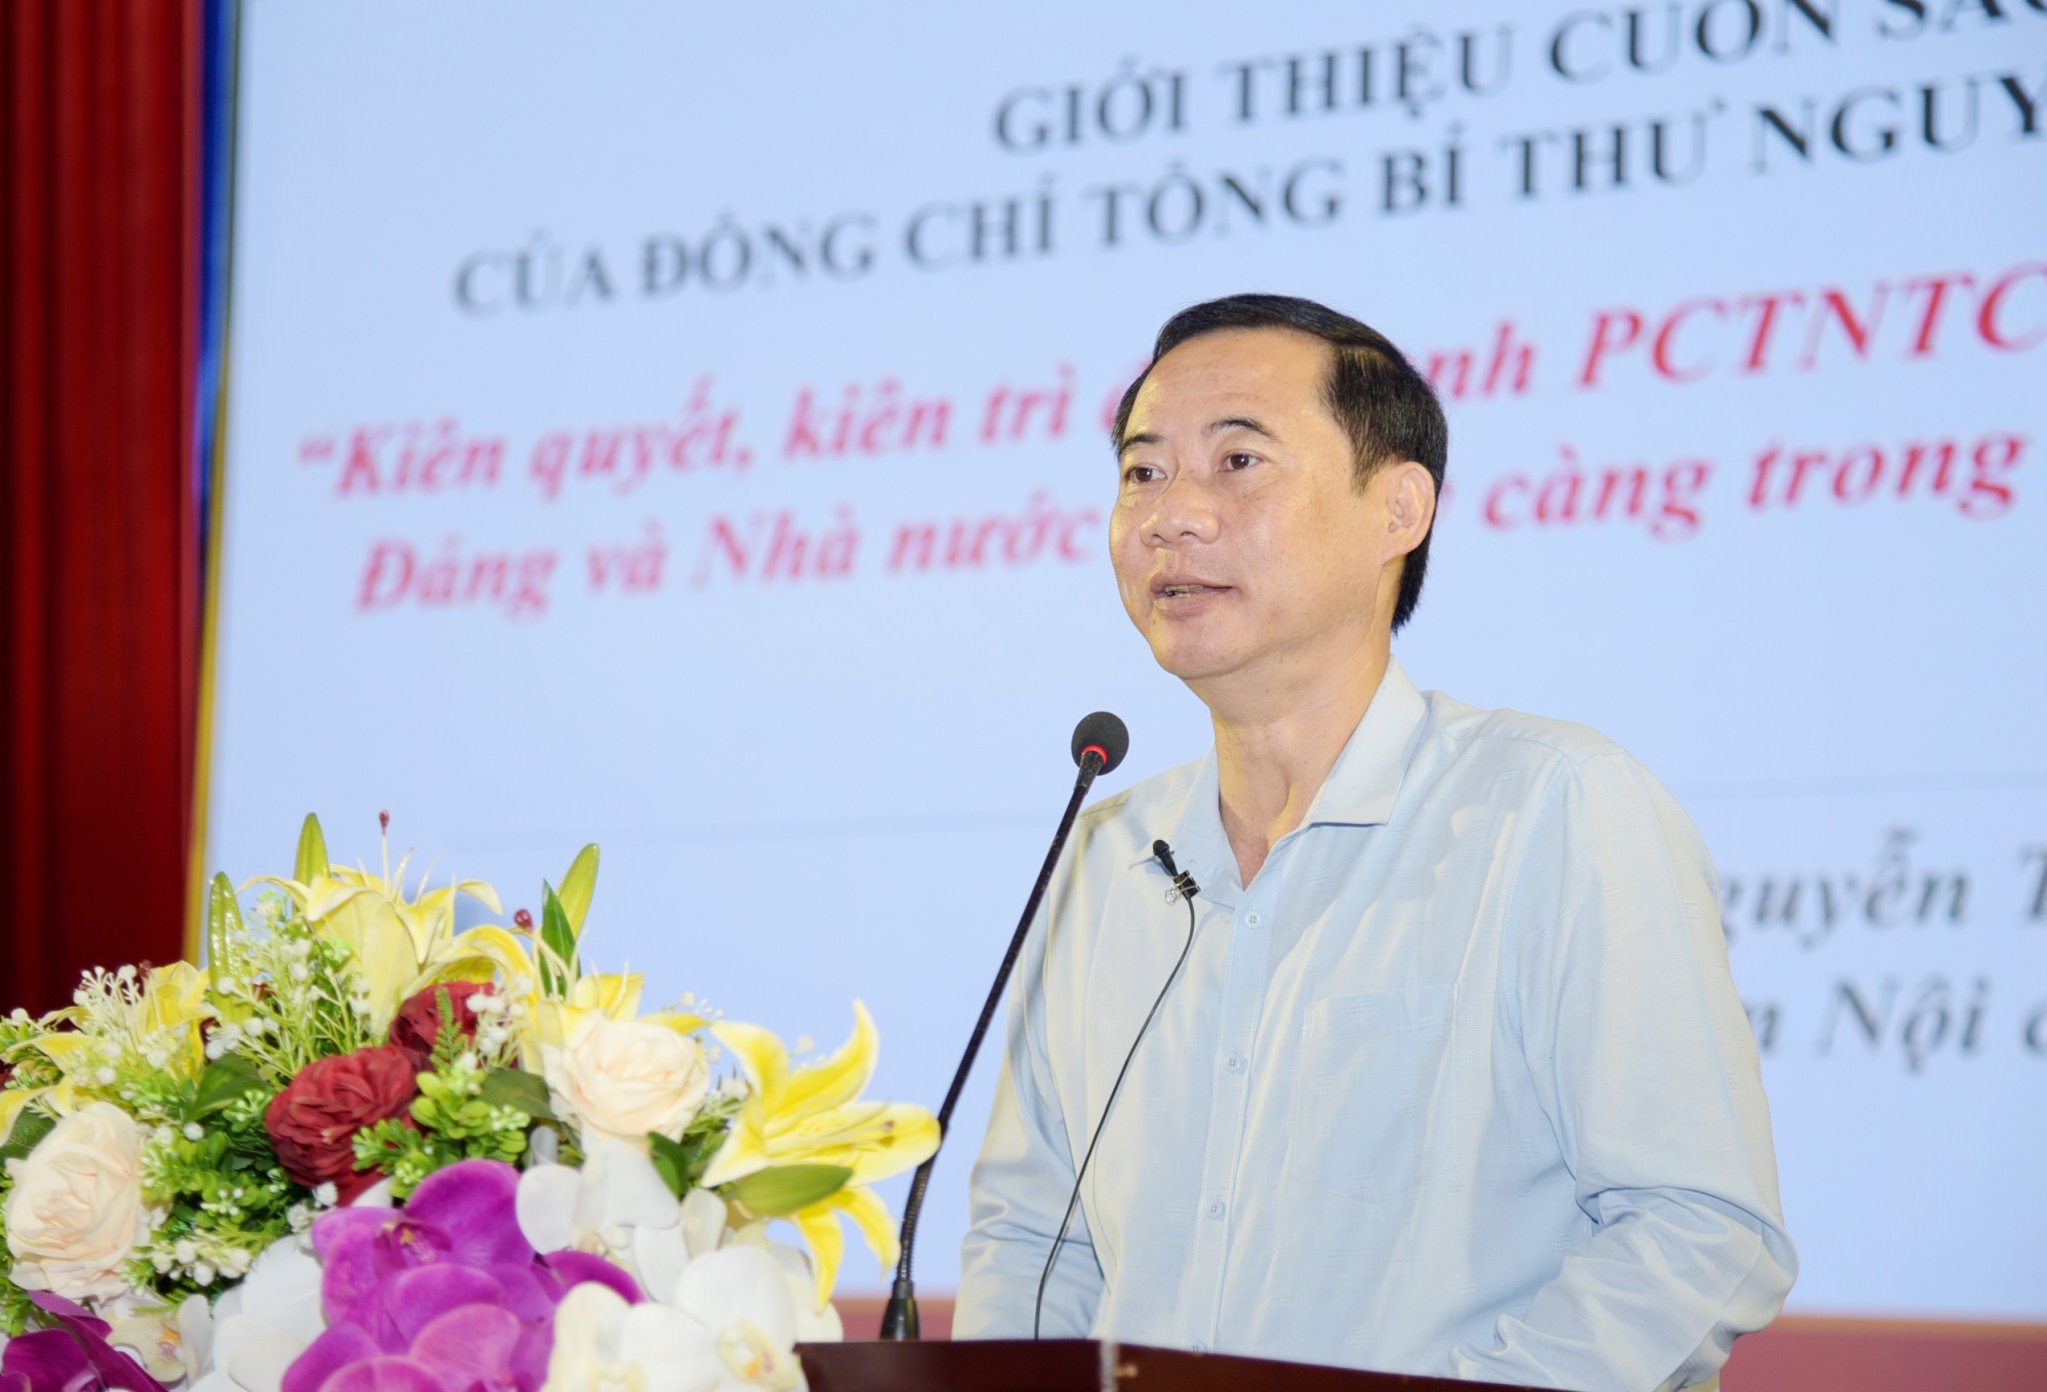 Đồng chí Nguyễn Thái Học, Phó Trưởng Ban Nội chính Trung ương dự quán triệt nội dung, giá trị cốt lõi Cuốn sách tại Hội nghị 